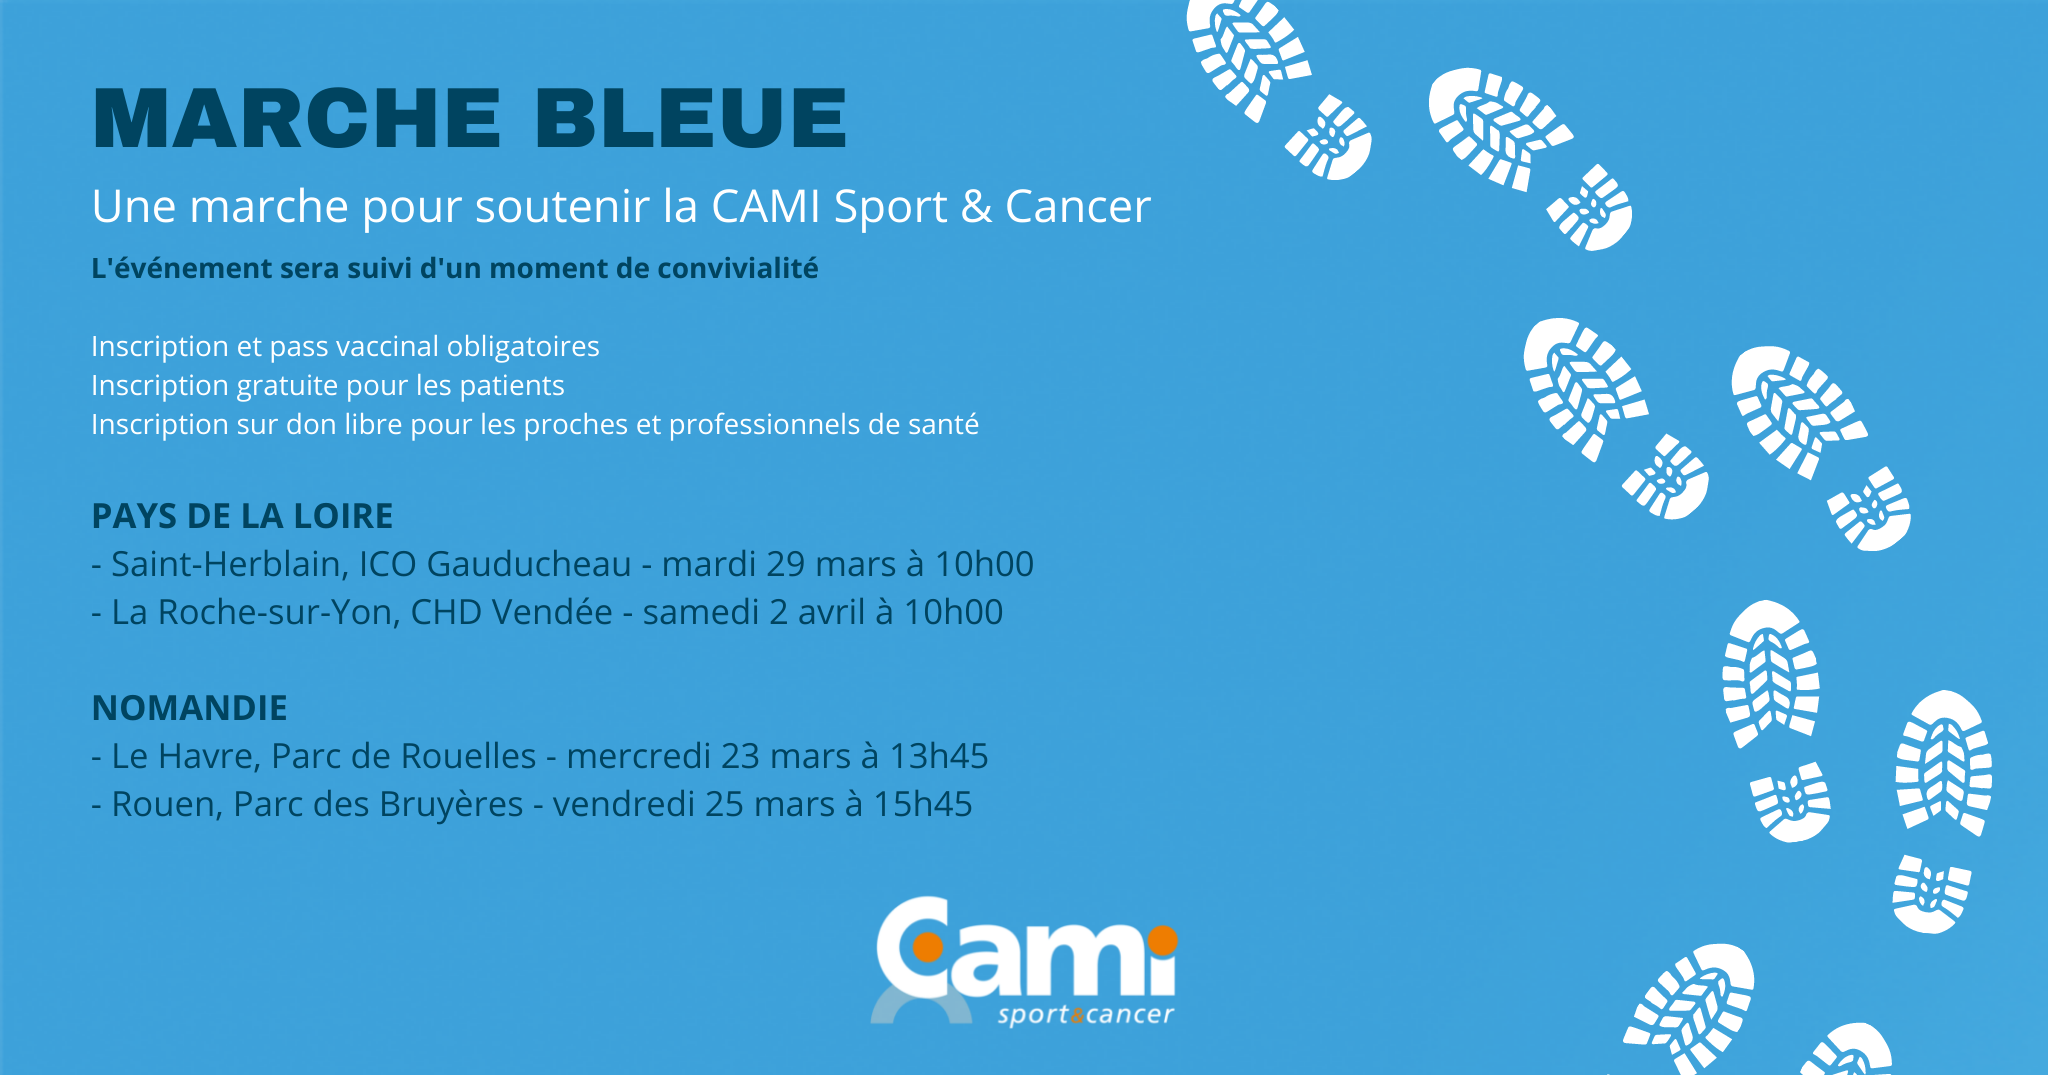 En mars, marchez pour soutenir la CAMI Sport & Cancer !